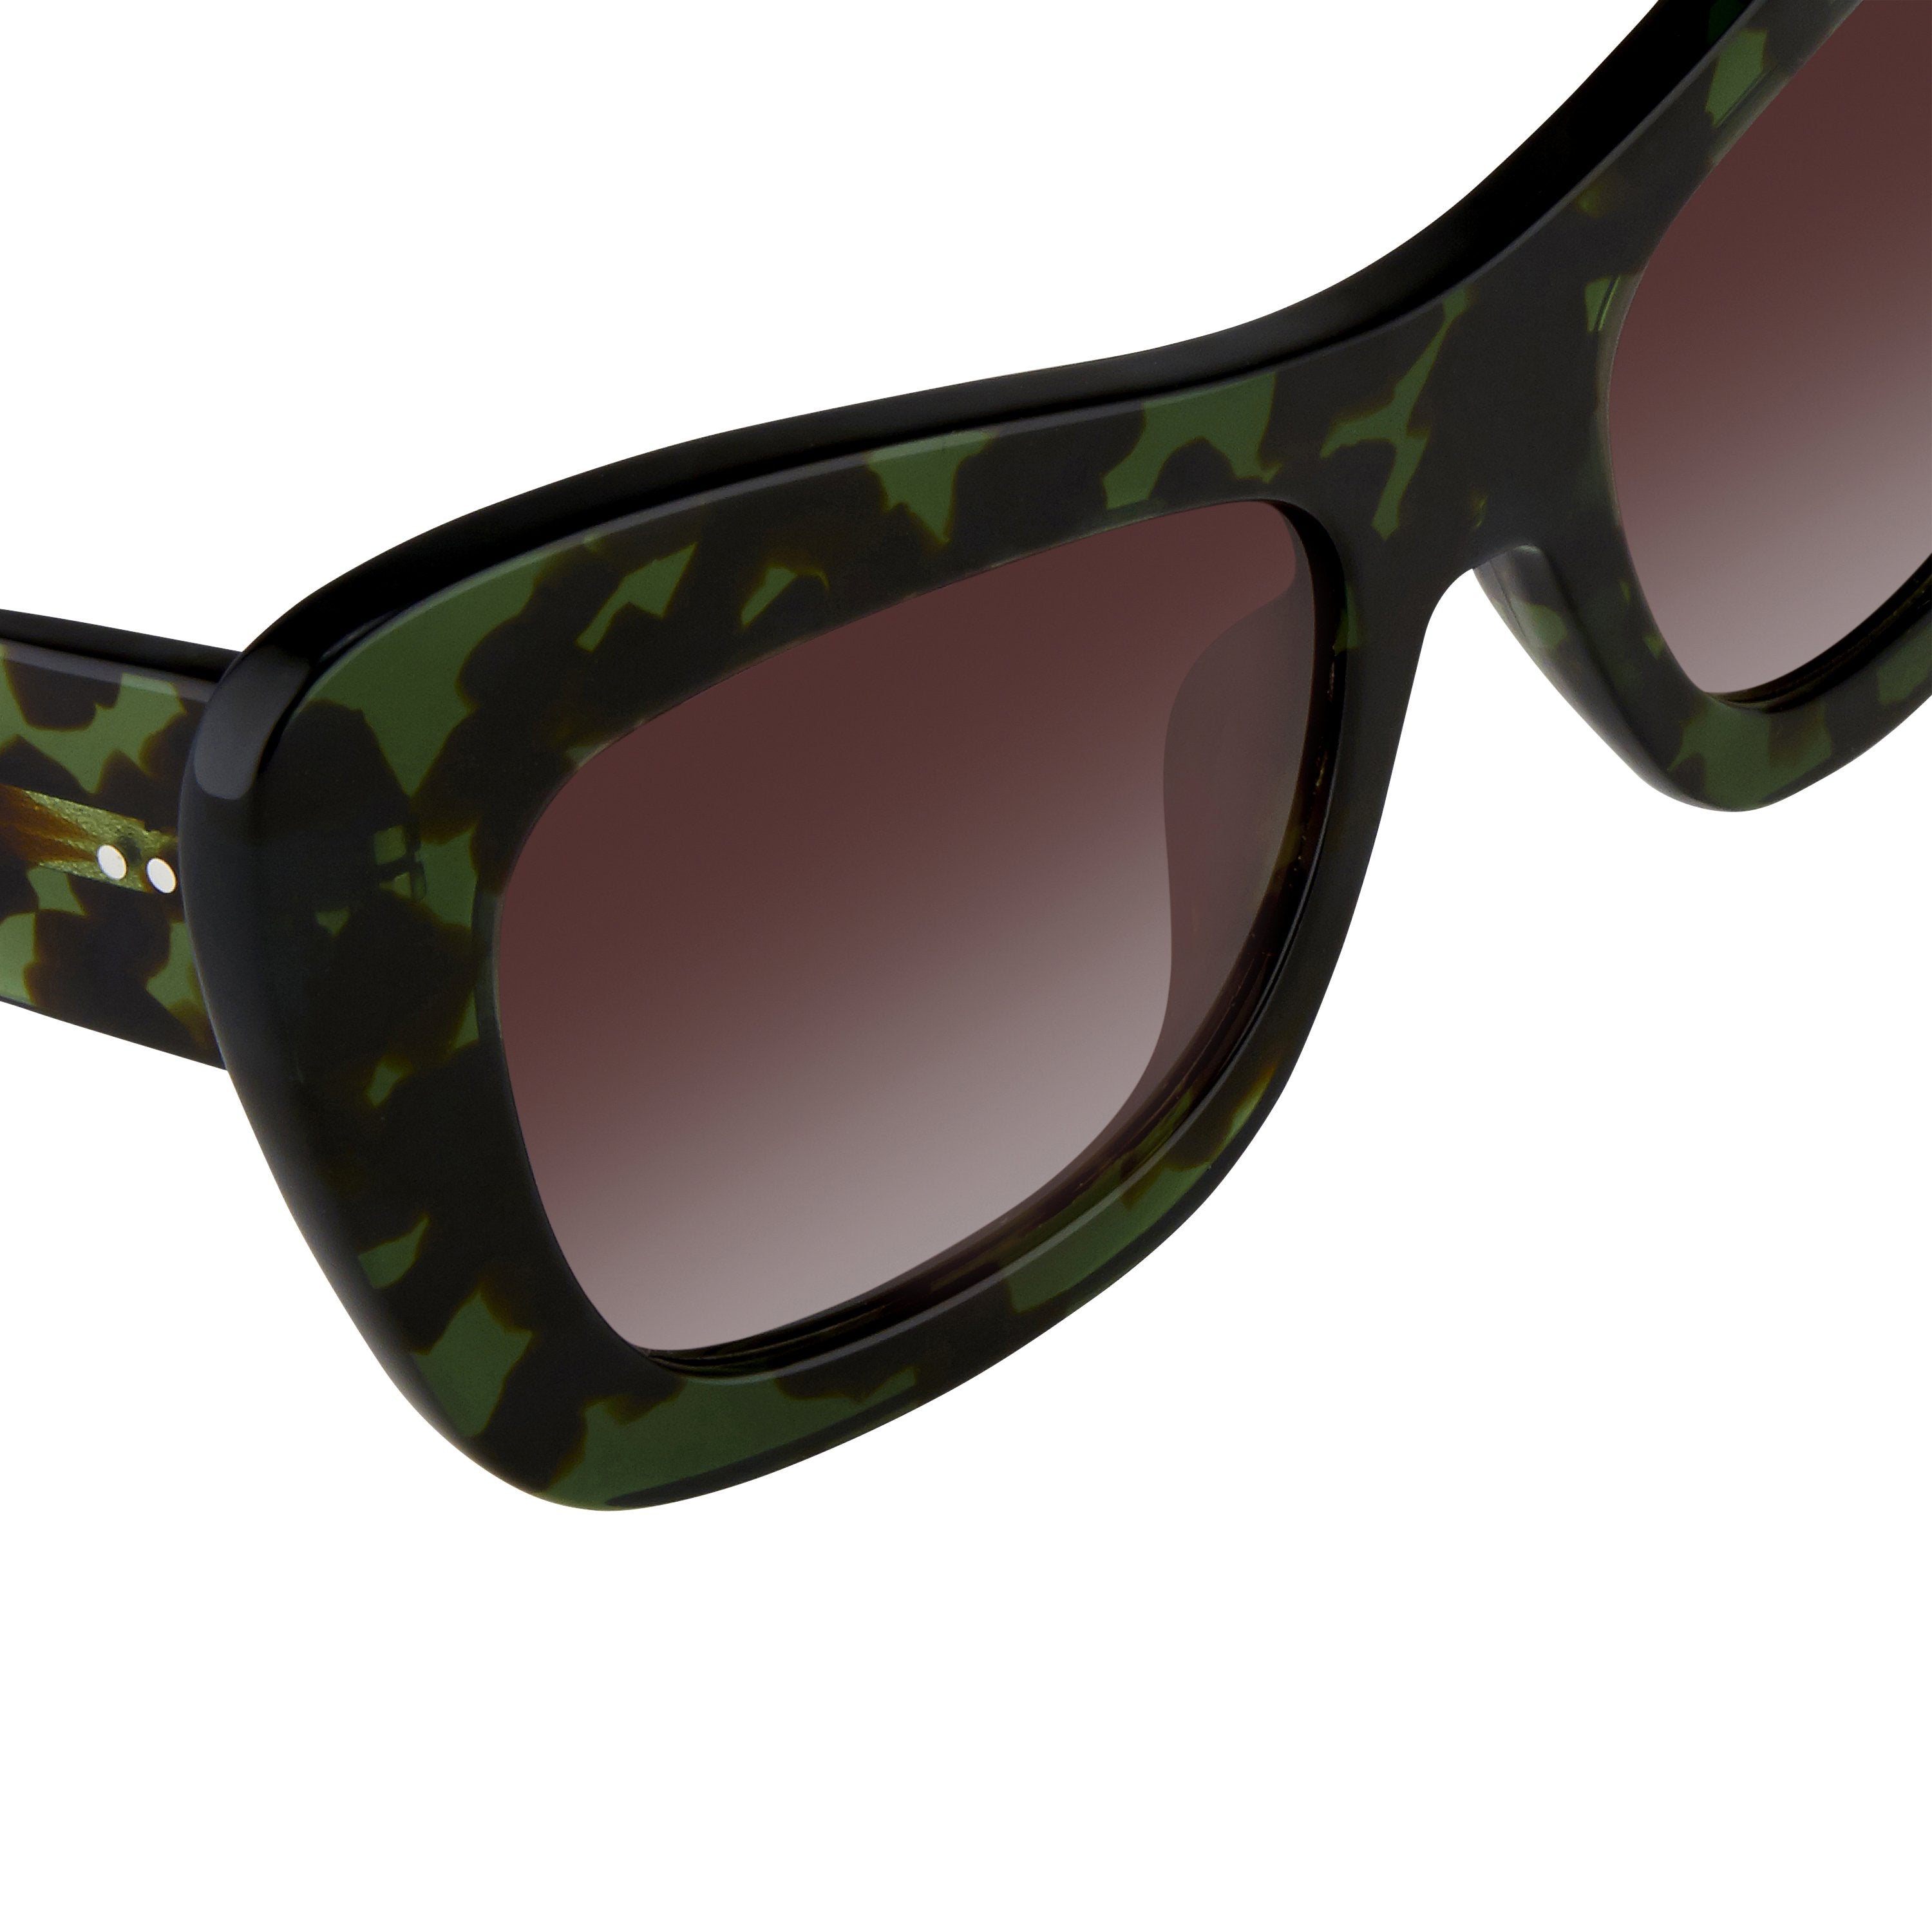 Color_DVN122C6SUN - Dries van Noten 122 C6 Oversized Sunglasses